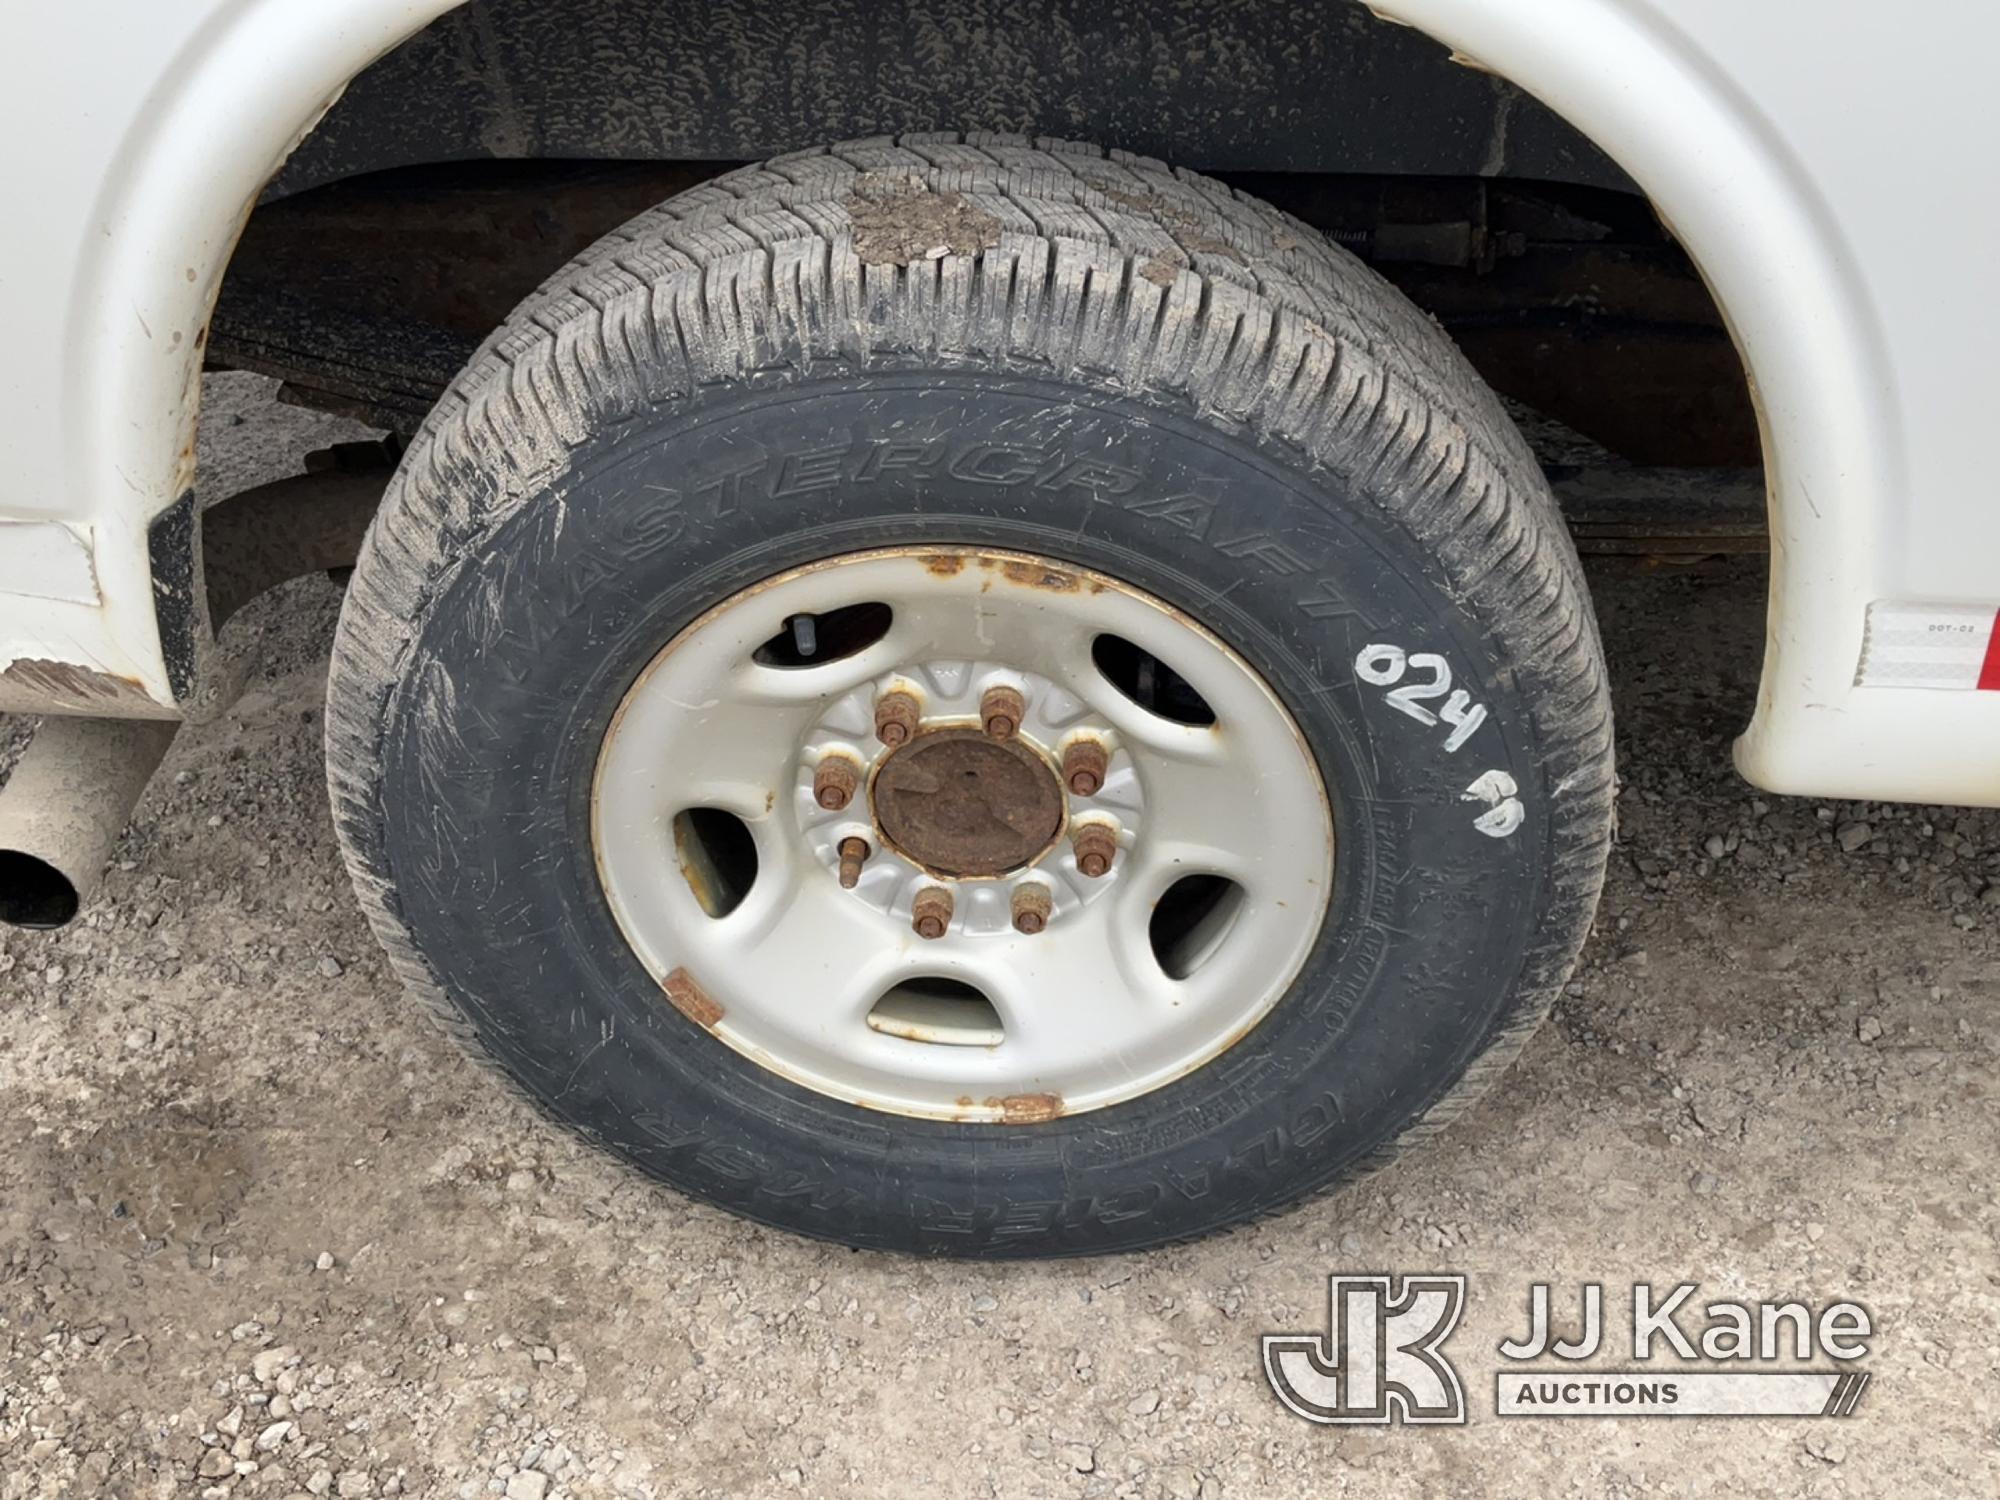 (Rome, NY) 2017 Chevrolet Express G2500 Cargo Van Runs & Moves, Body & Rust Damage